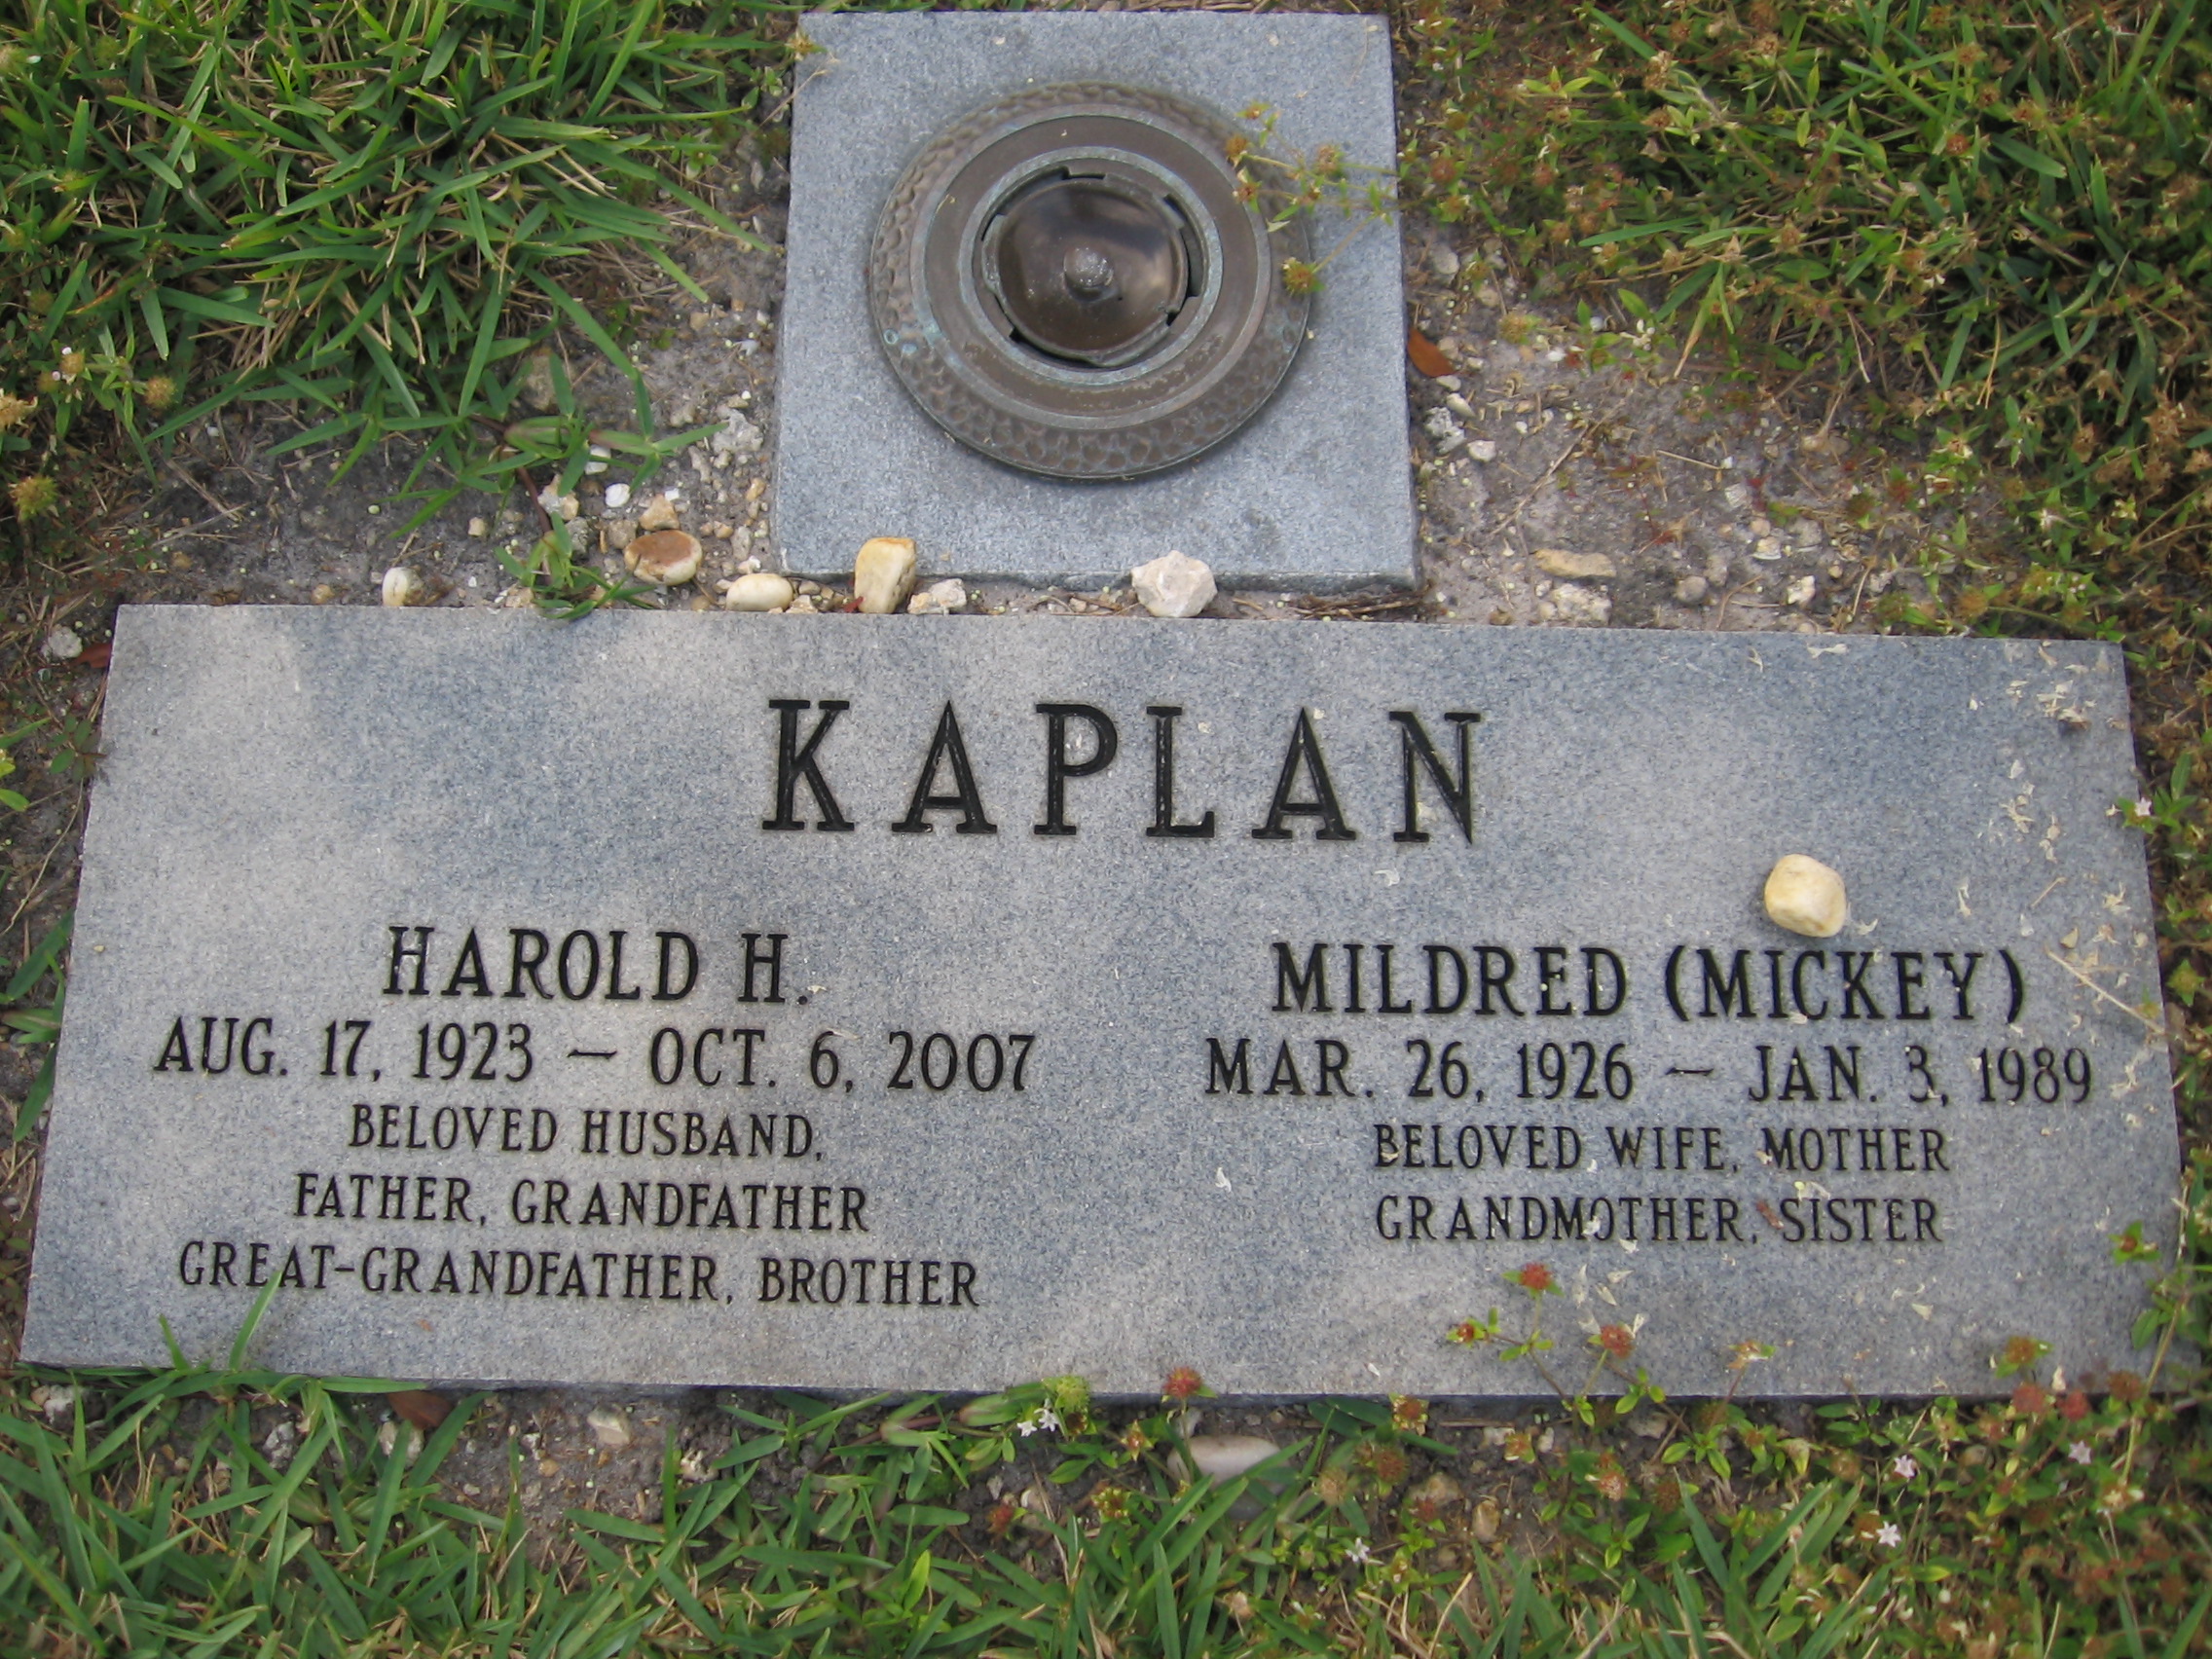 Harold H Kaplan